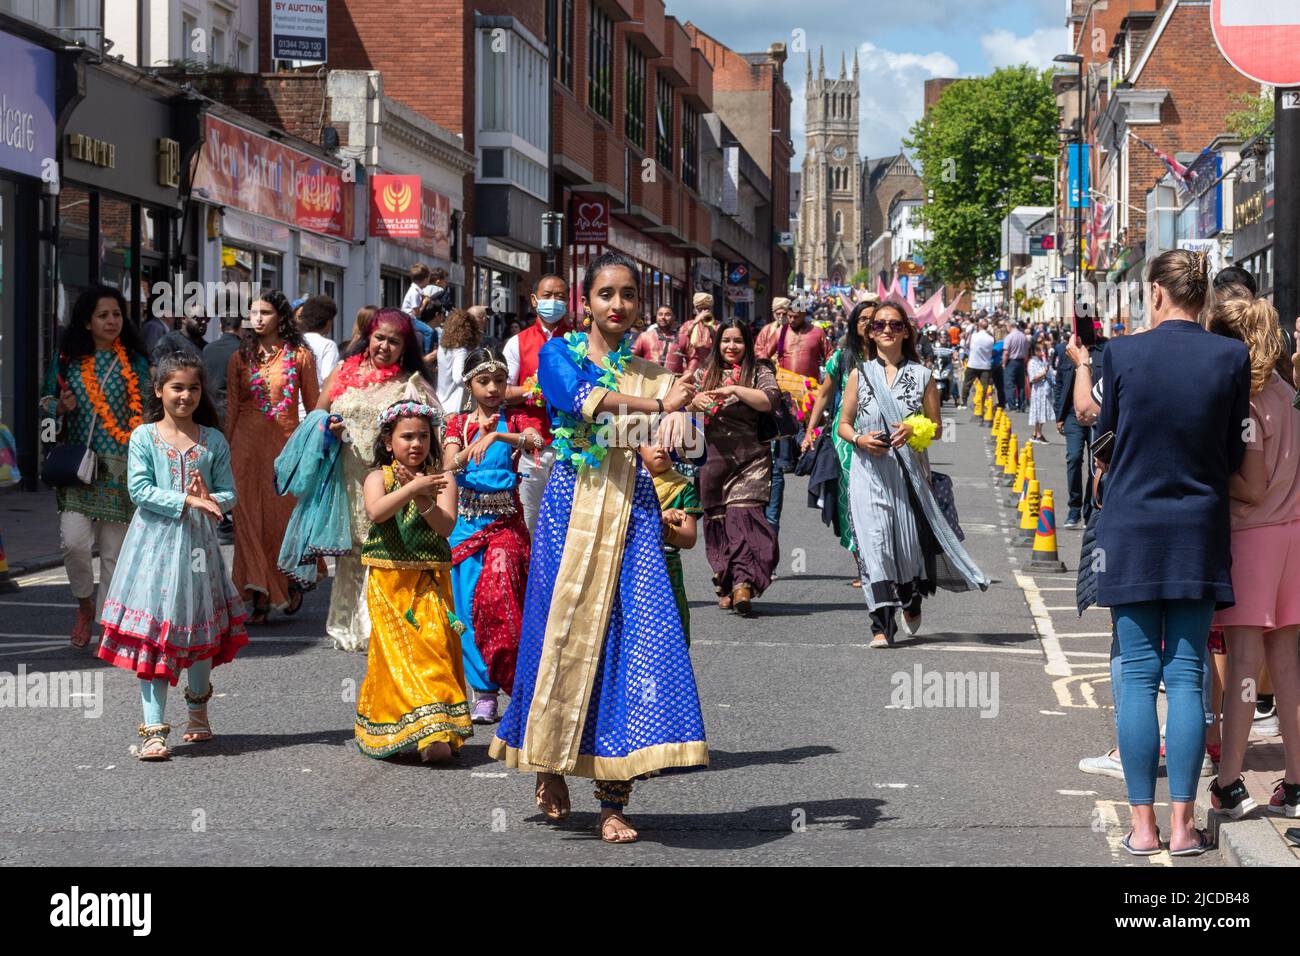 Indische Tänzer nehmen an der Grand Parade am Victoria Day Teil, einer jährlichen Veranstaltung in Aldershot, Hampshire, England, Großbritannien. Stockfoto